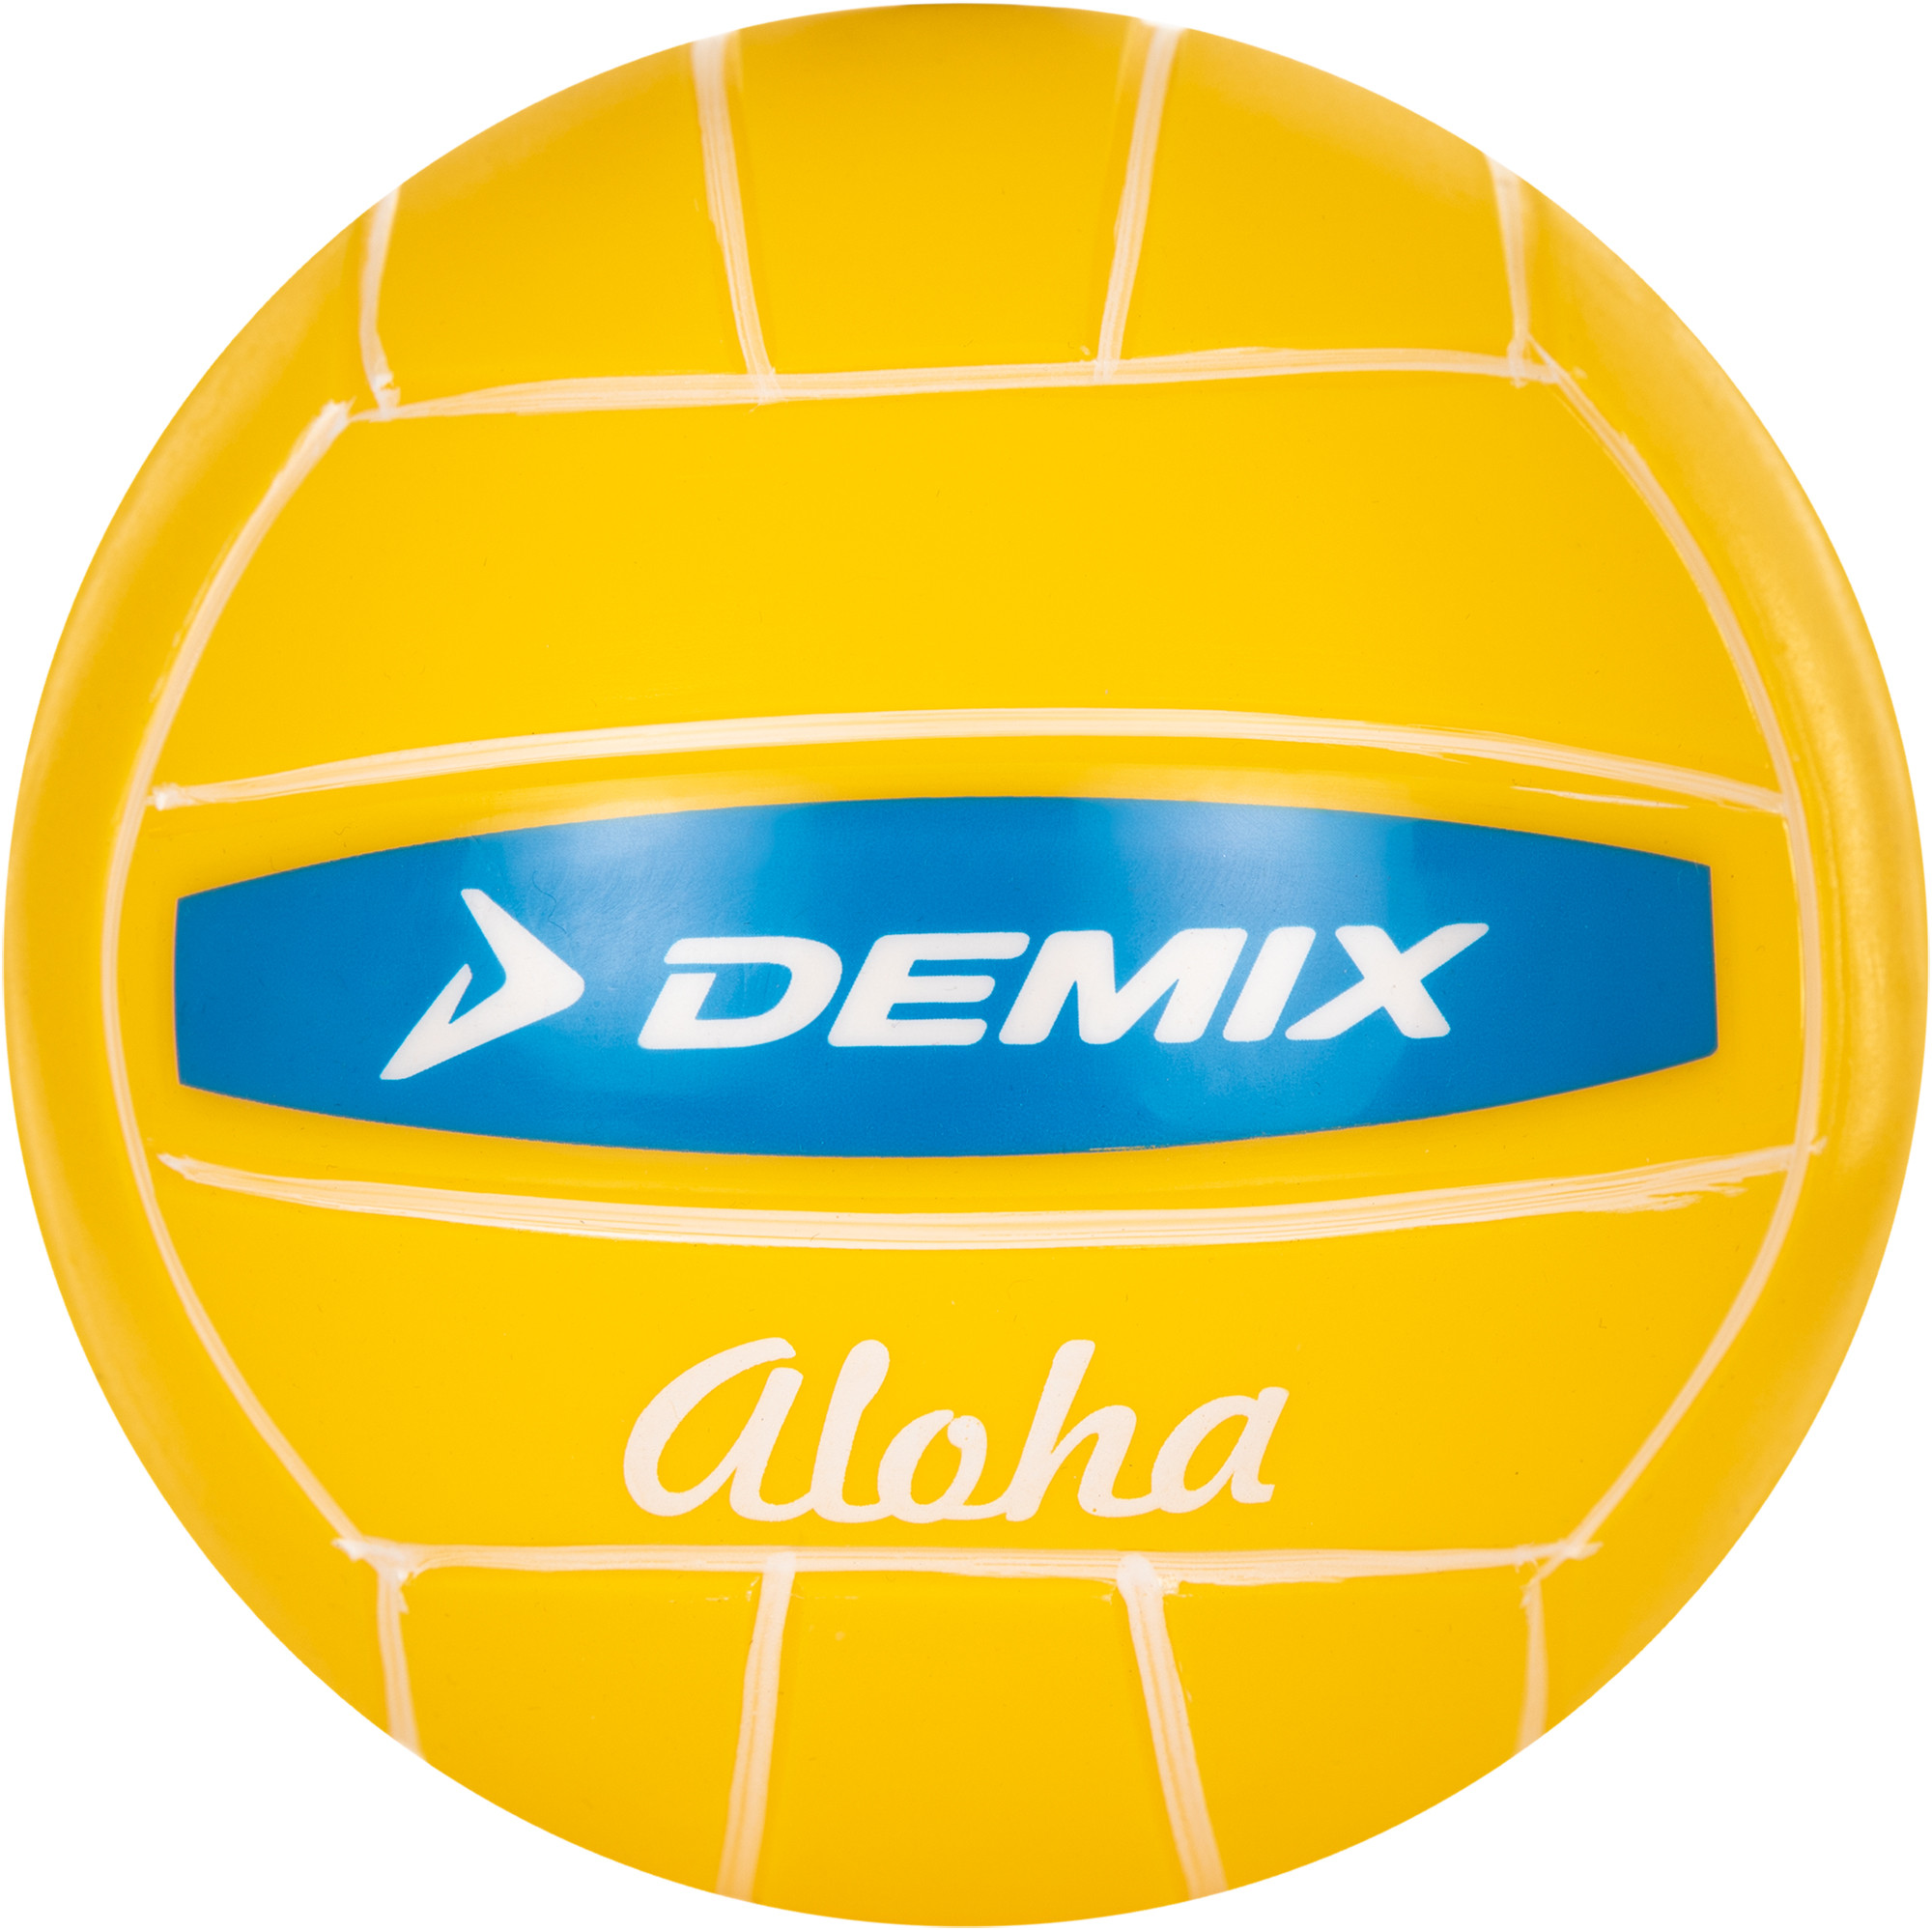 Мяч волейбольный сувенирный Demix